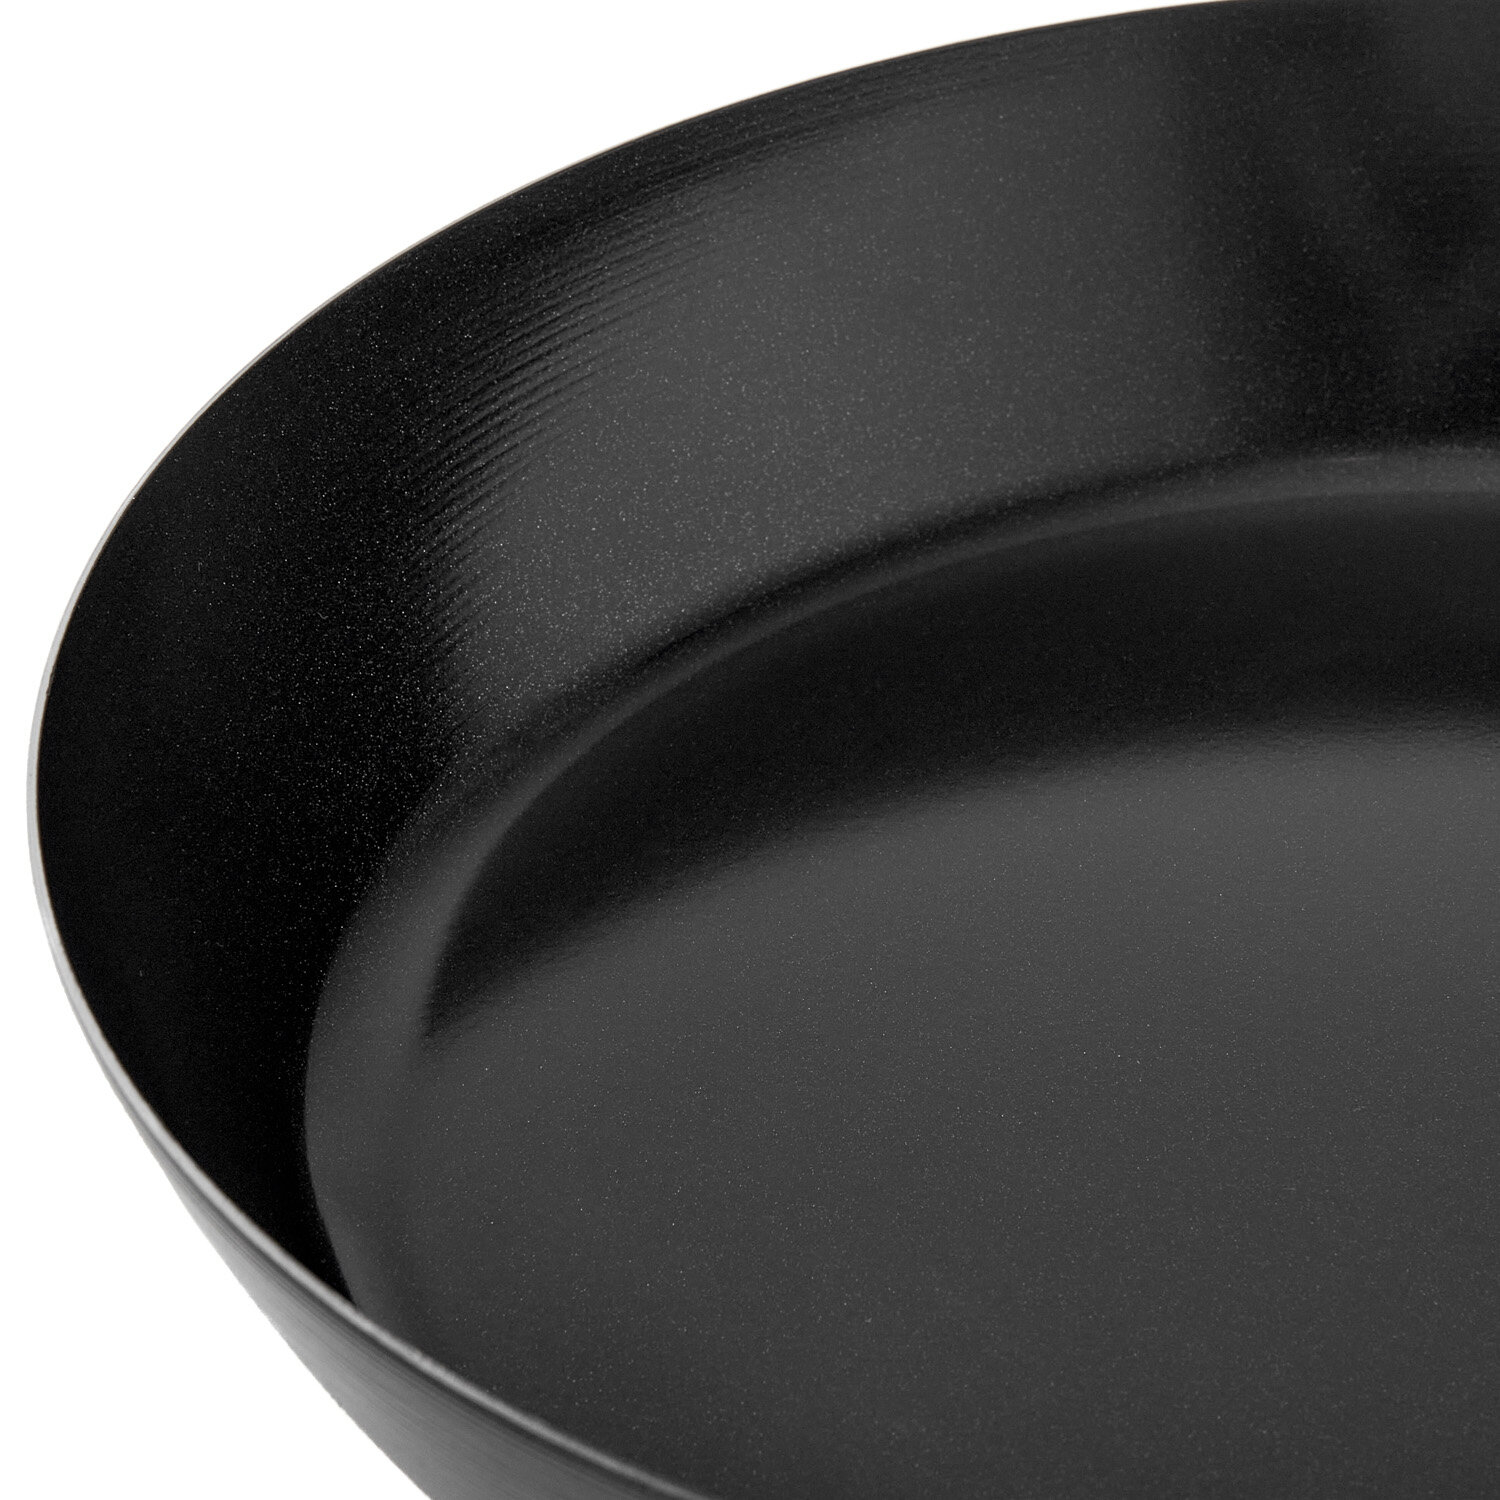 Сковорода из углеродистой стали Walmer Carbon 20 см цвет черный